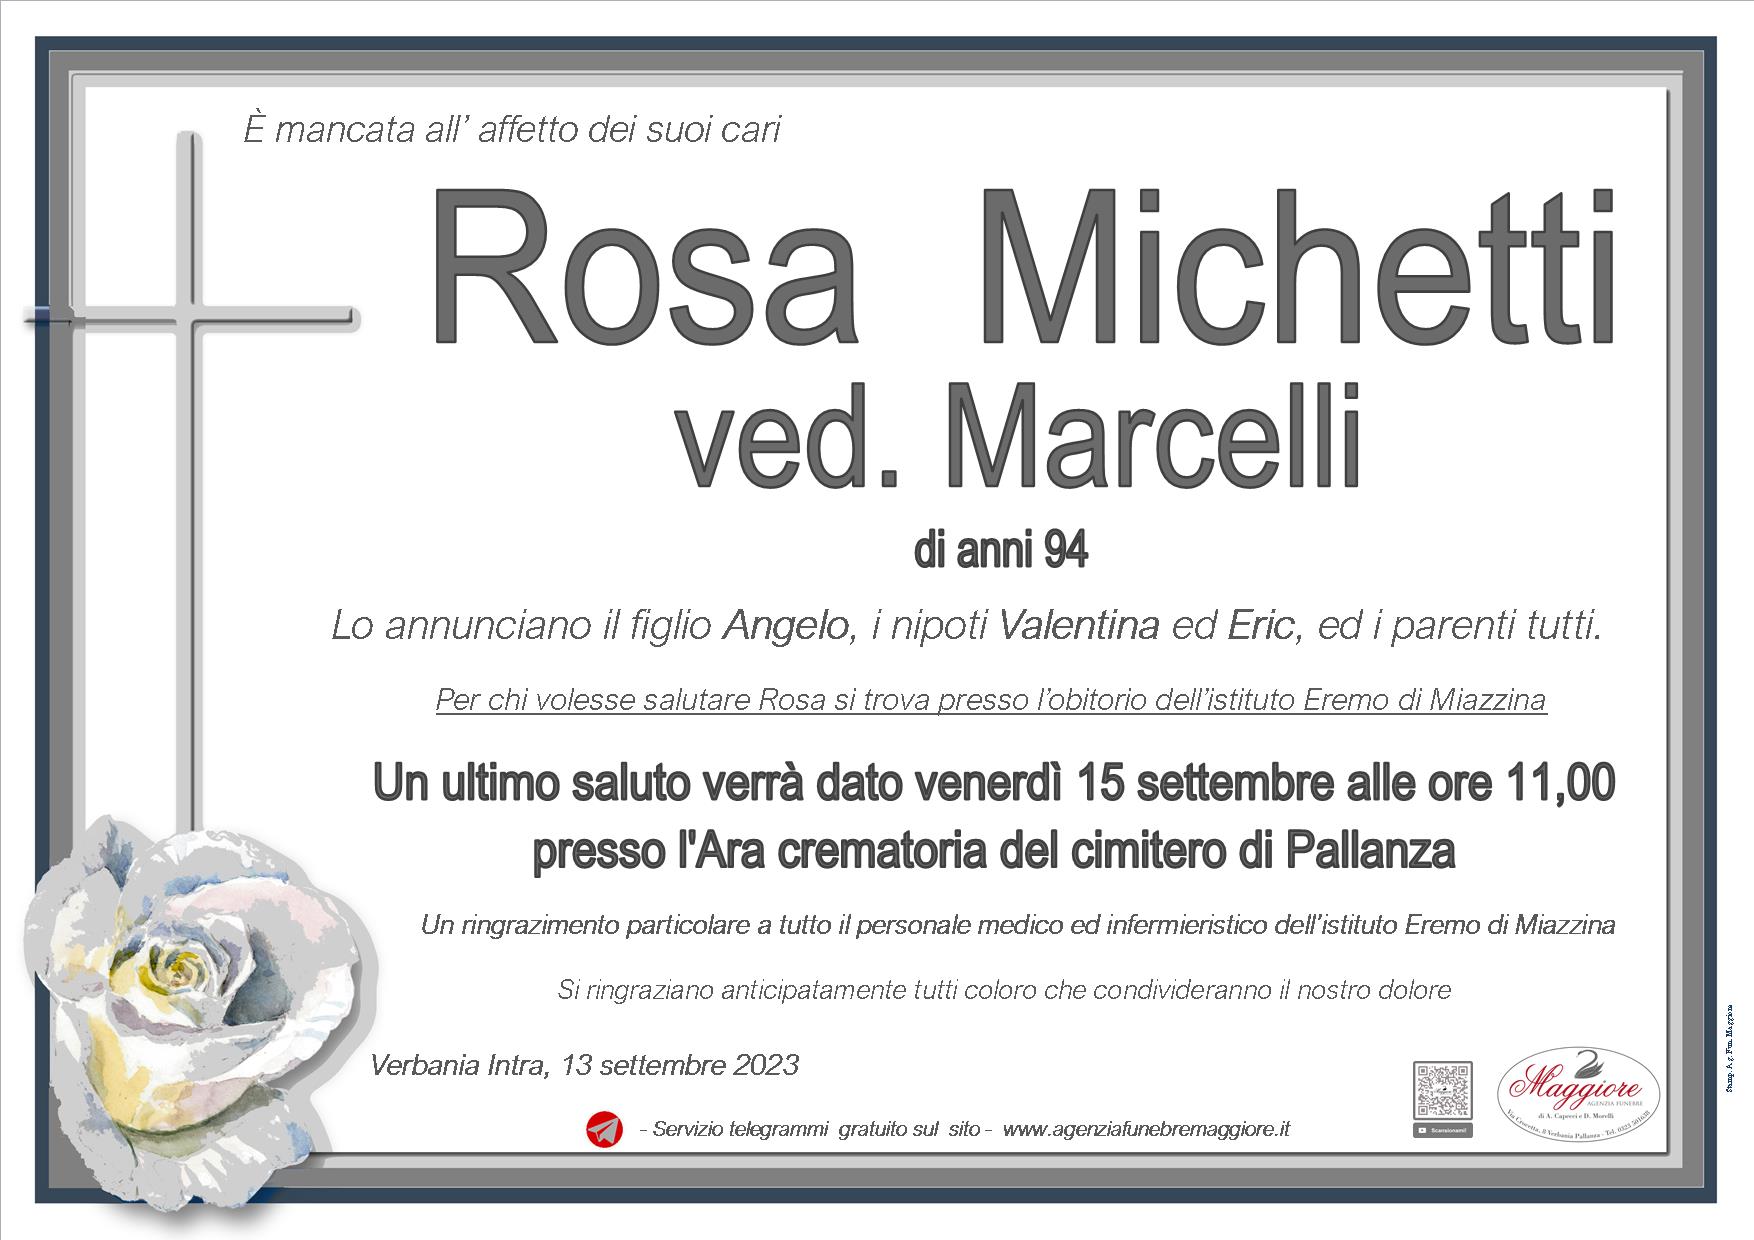 Rosa Michetti ved. marcelli